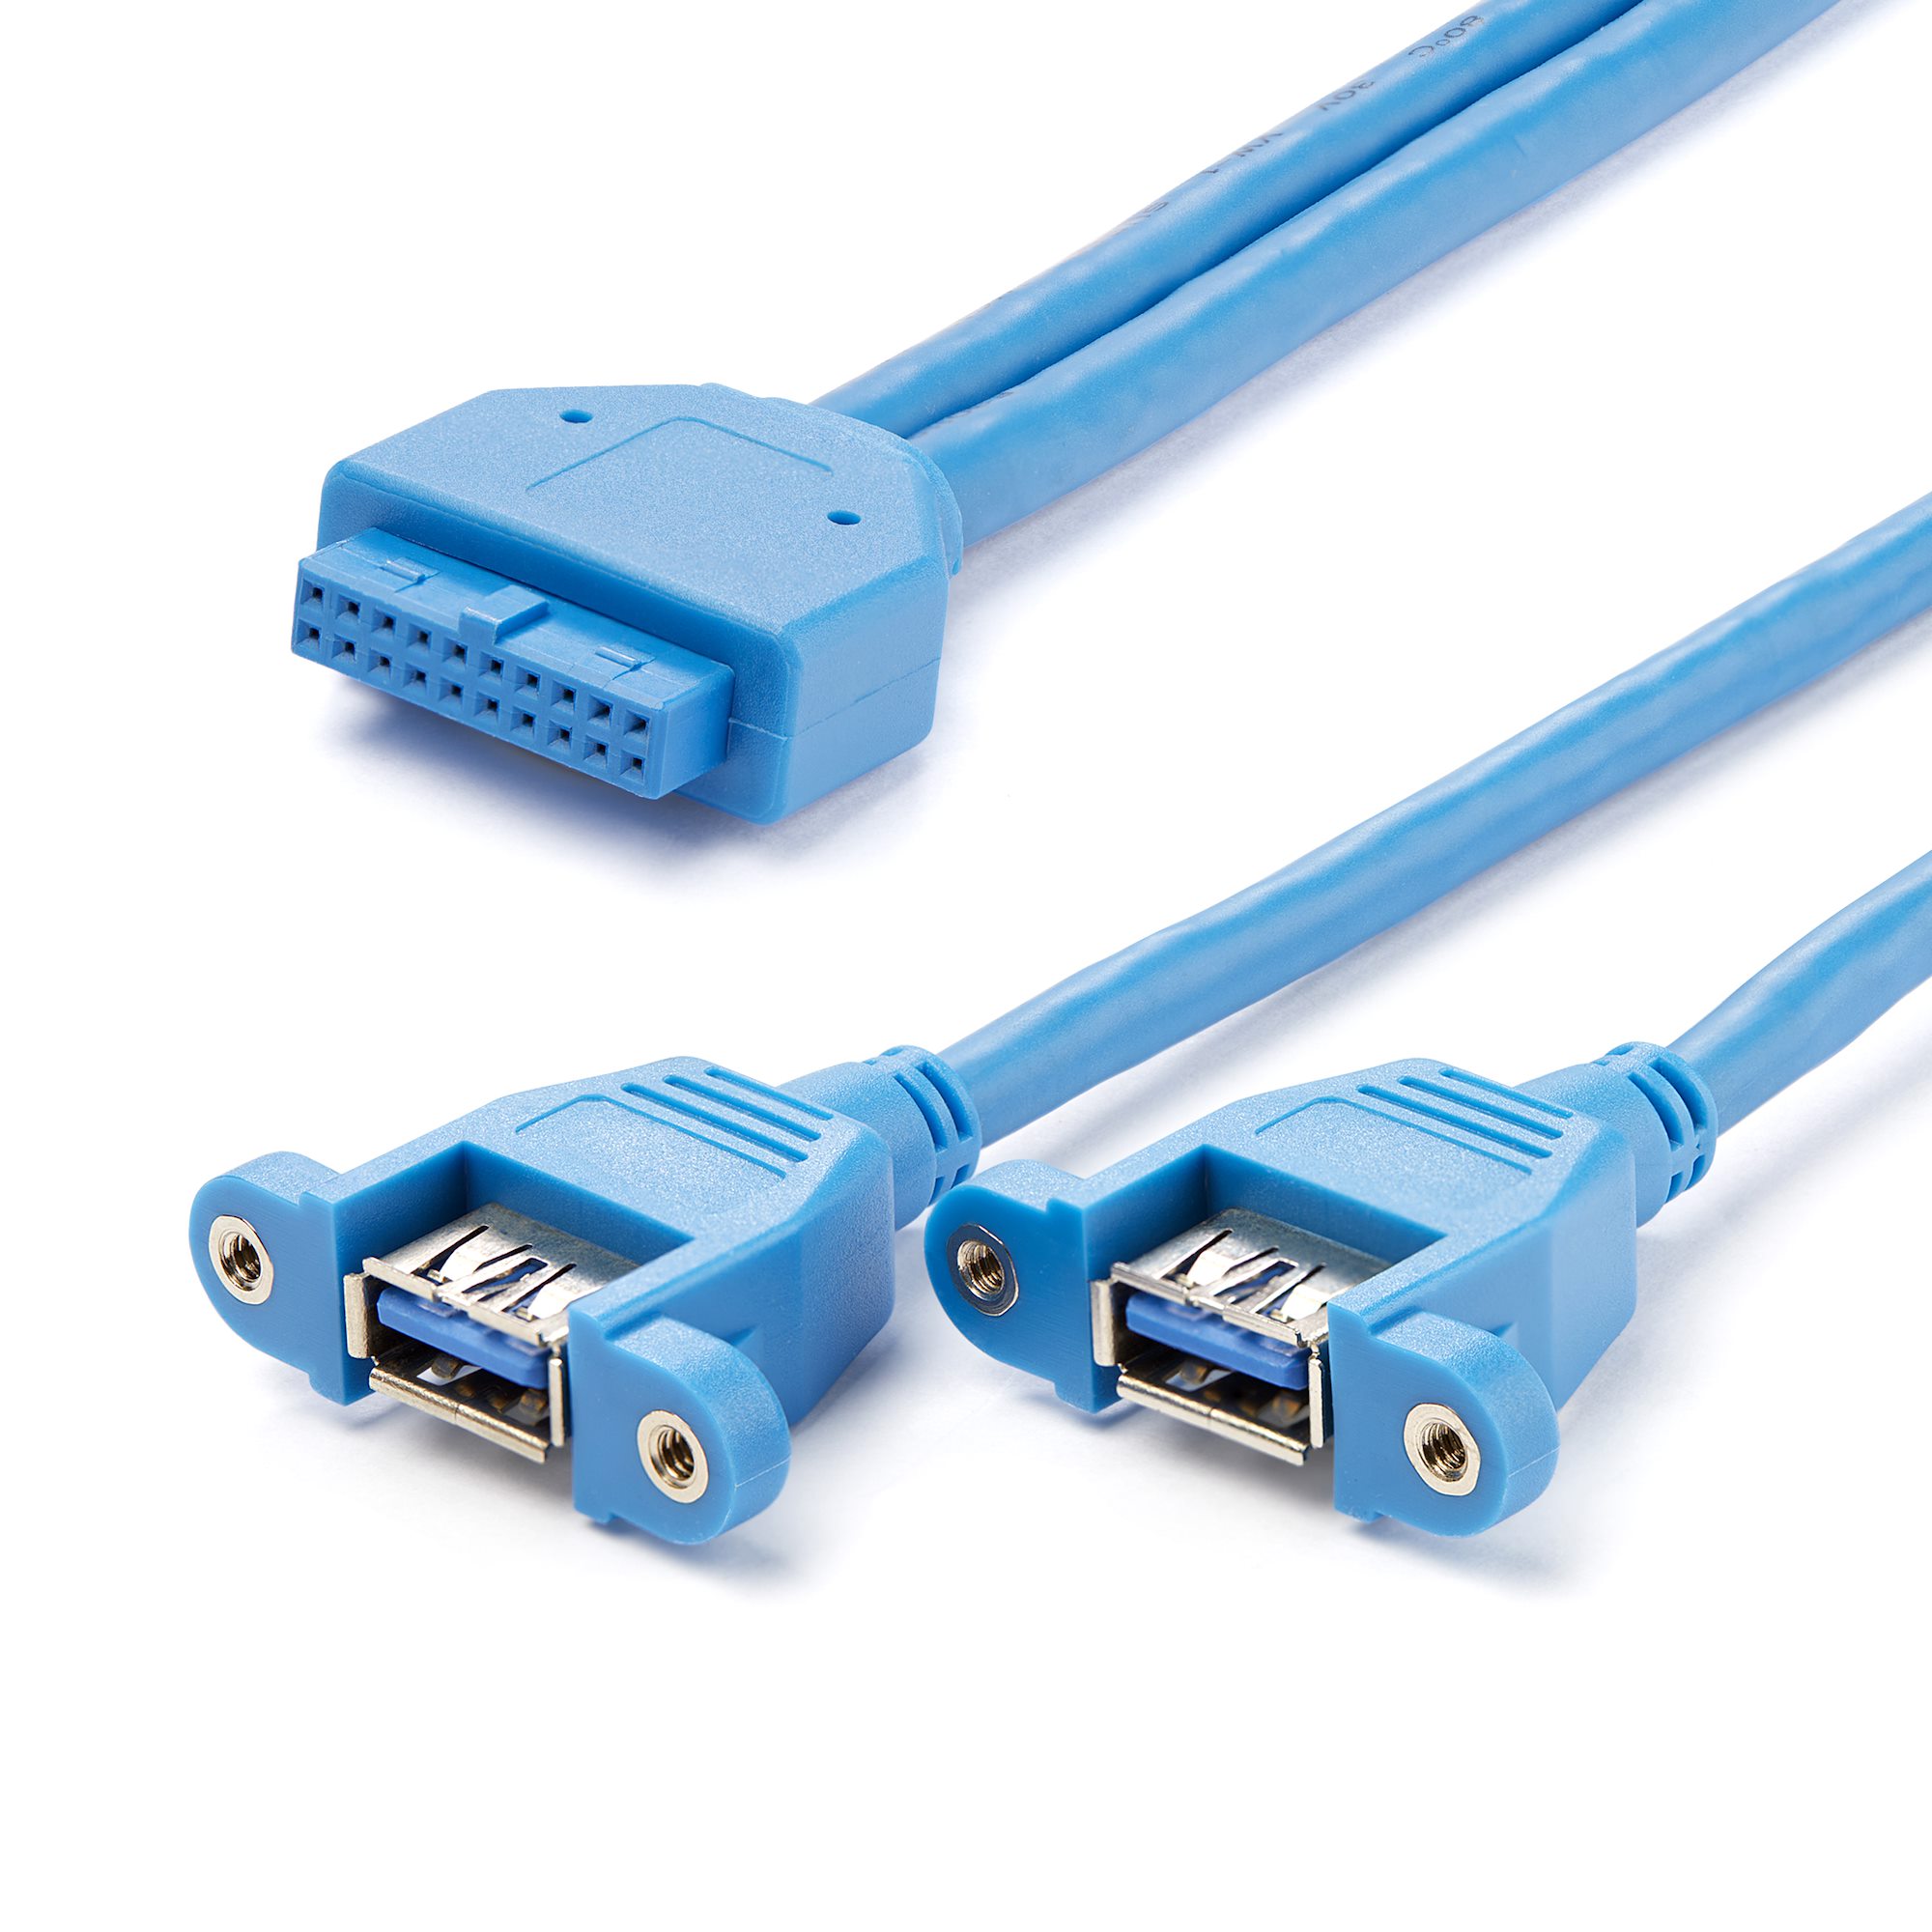 Parasit barrikade Urimelig 2 Port Motherboard to Panel Mount USB 3 - USB 3.0 Cables | StarTech.com